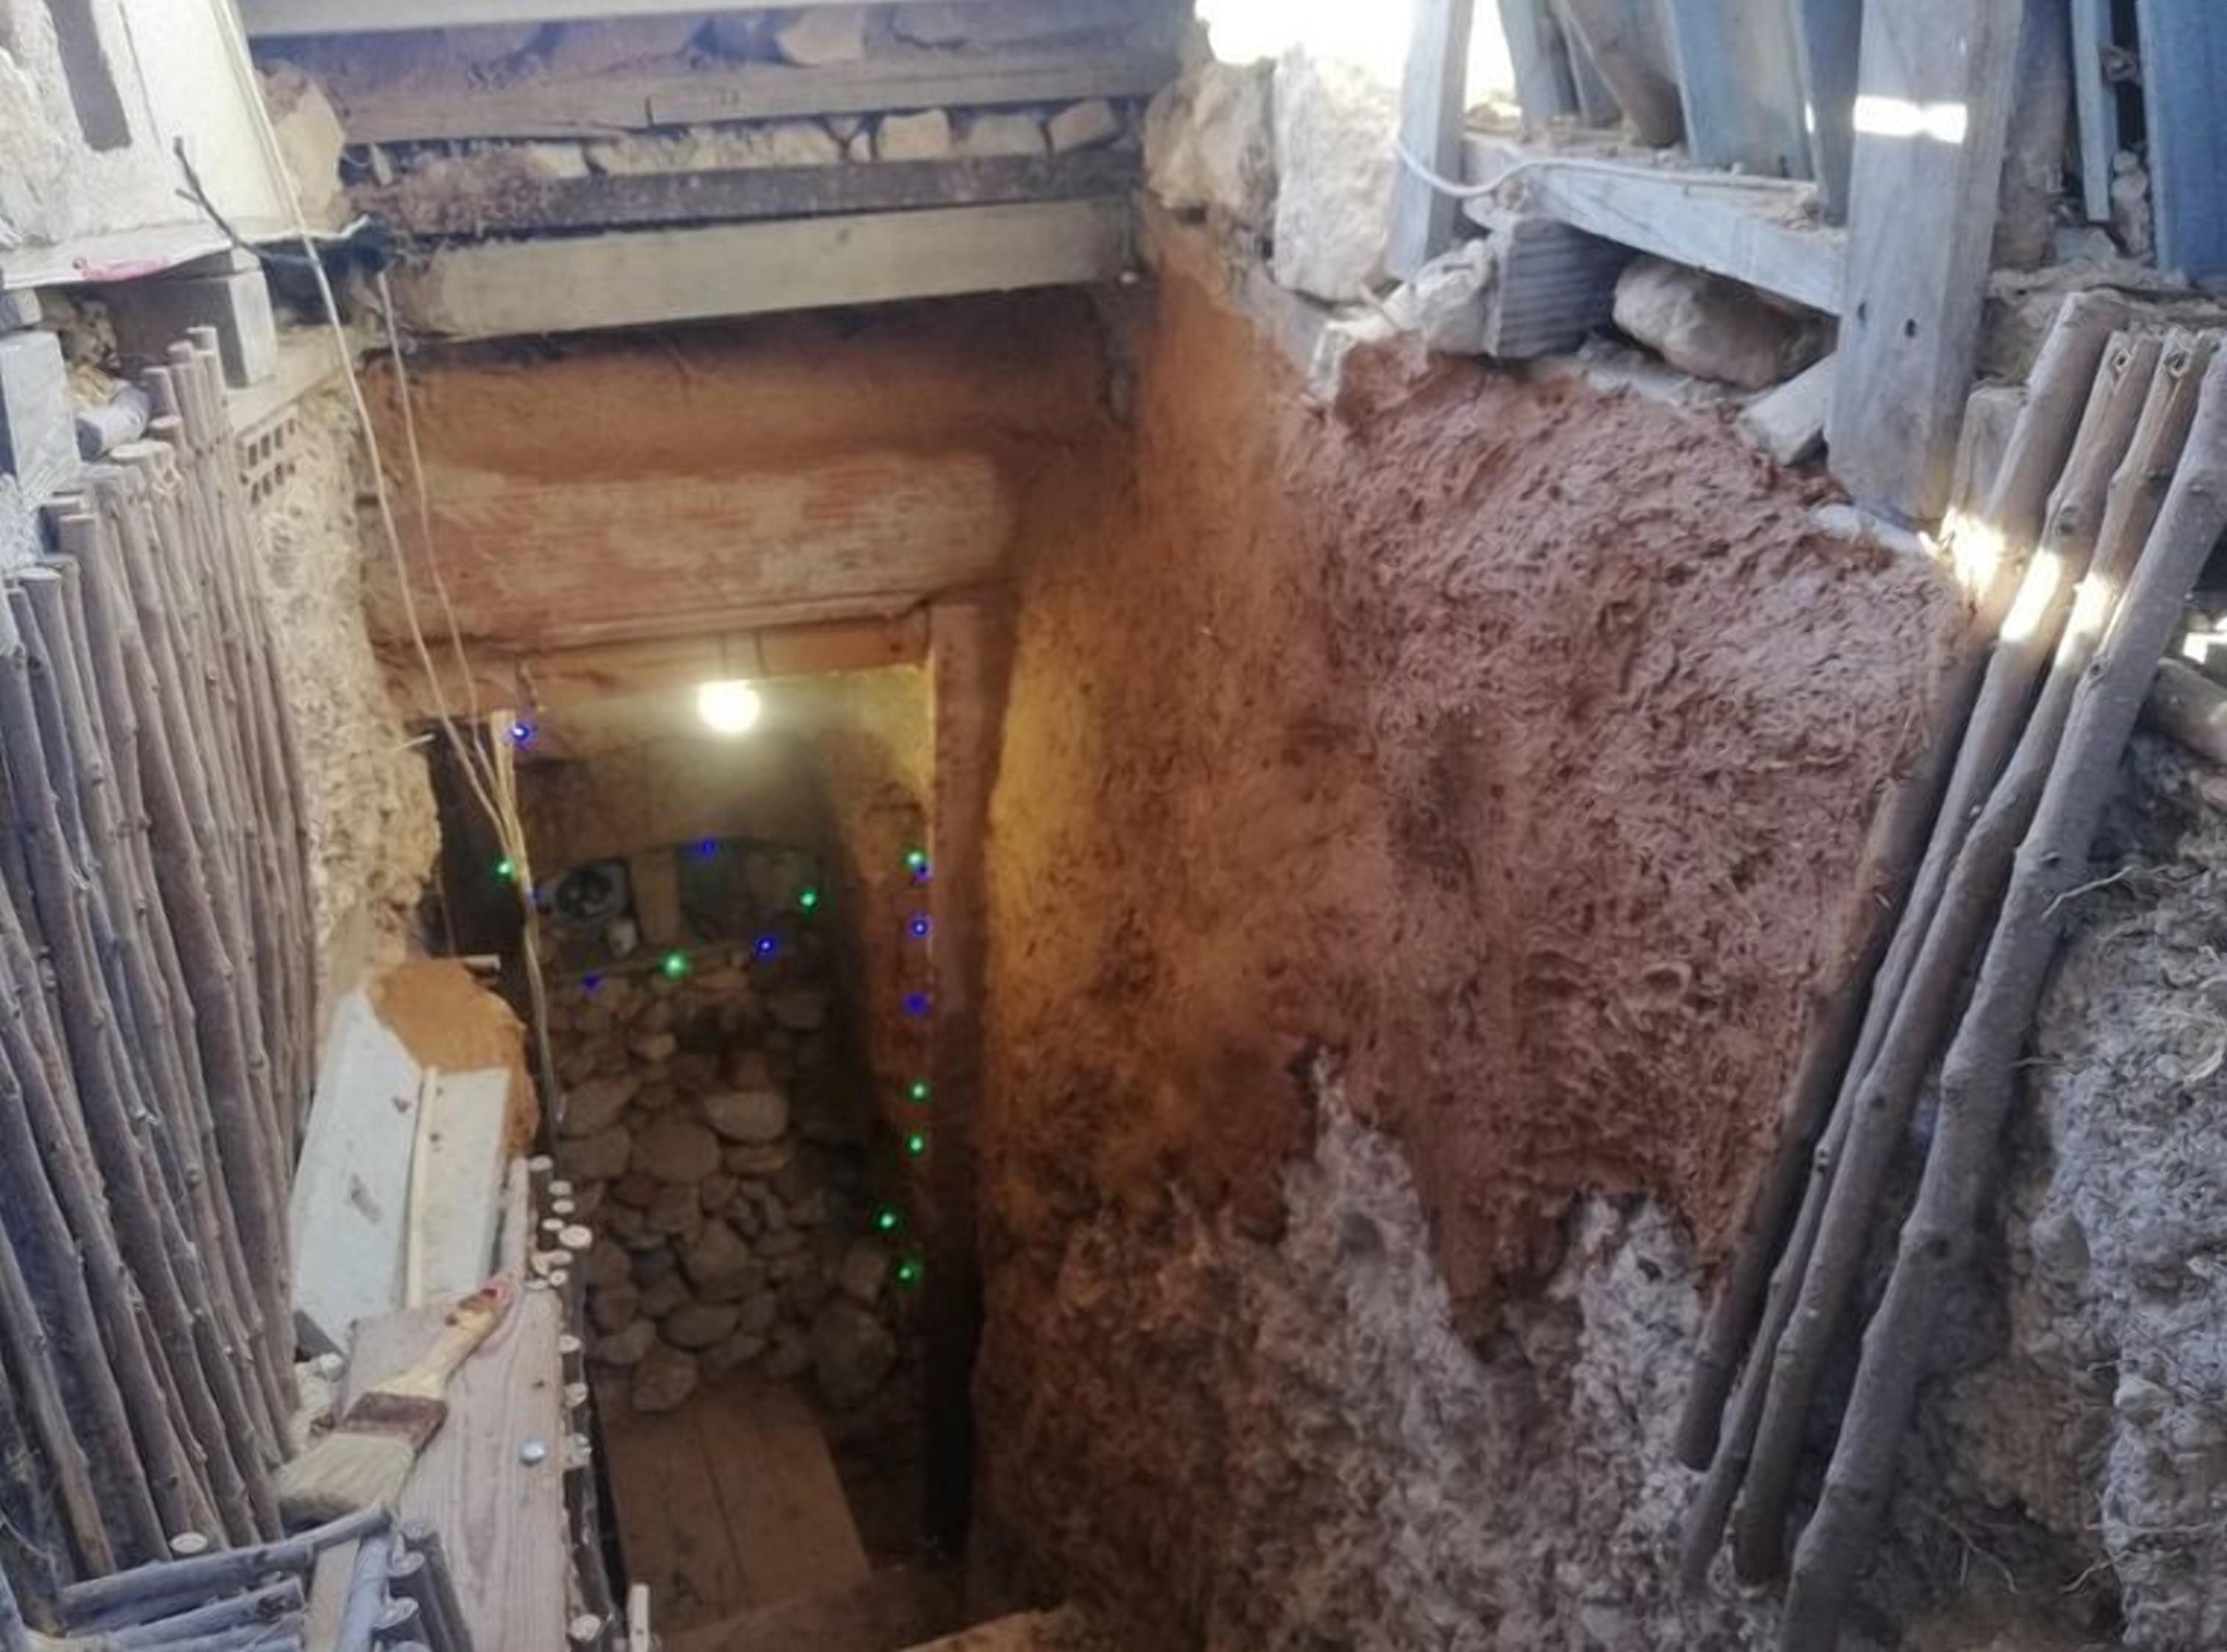 Підземний бункер: розлючений підліток викопав для себе особистий простір – відео